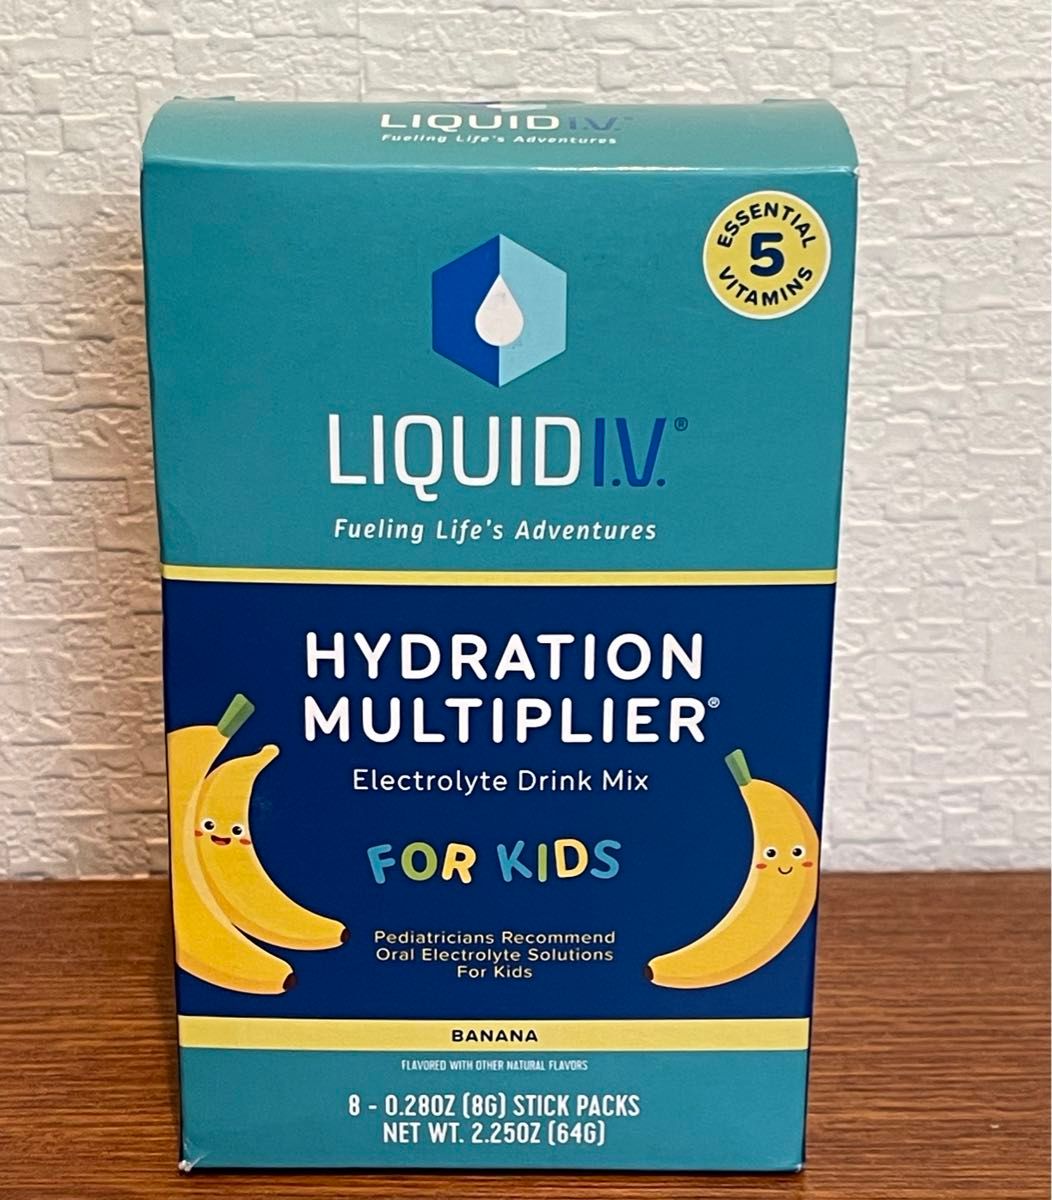 経口補水液パウダー子供用　Liquid I.V. FOR KIDS バナナ味　8本